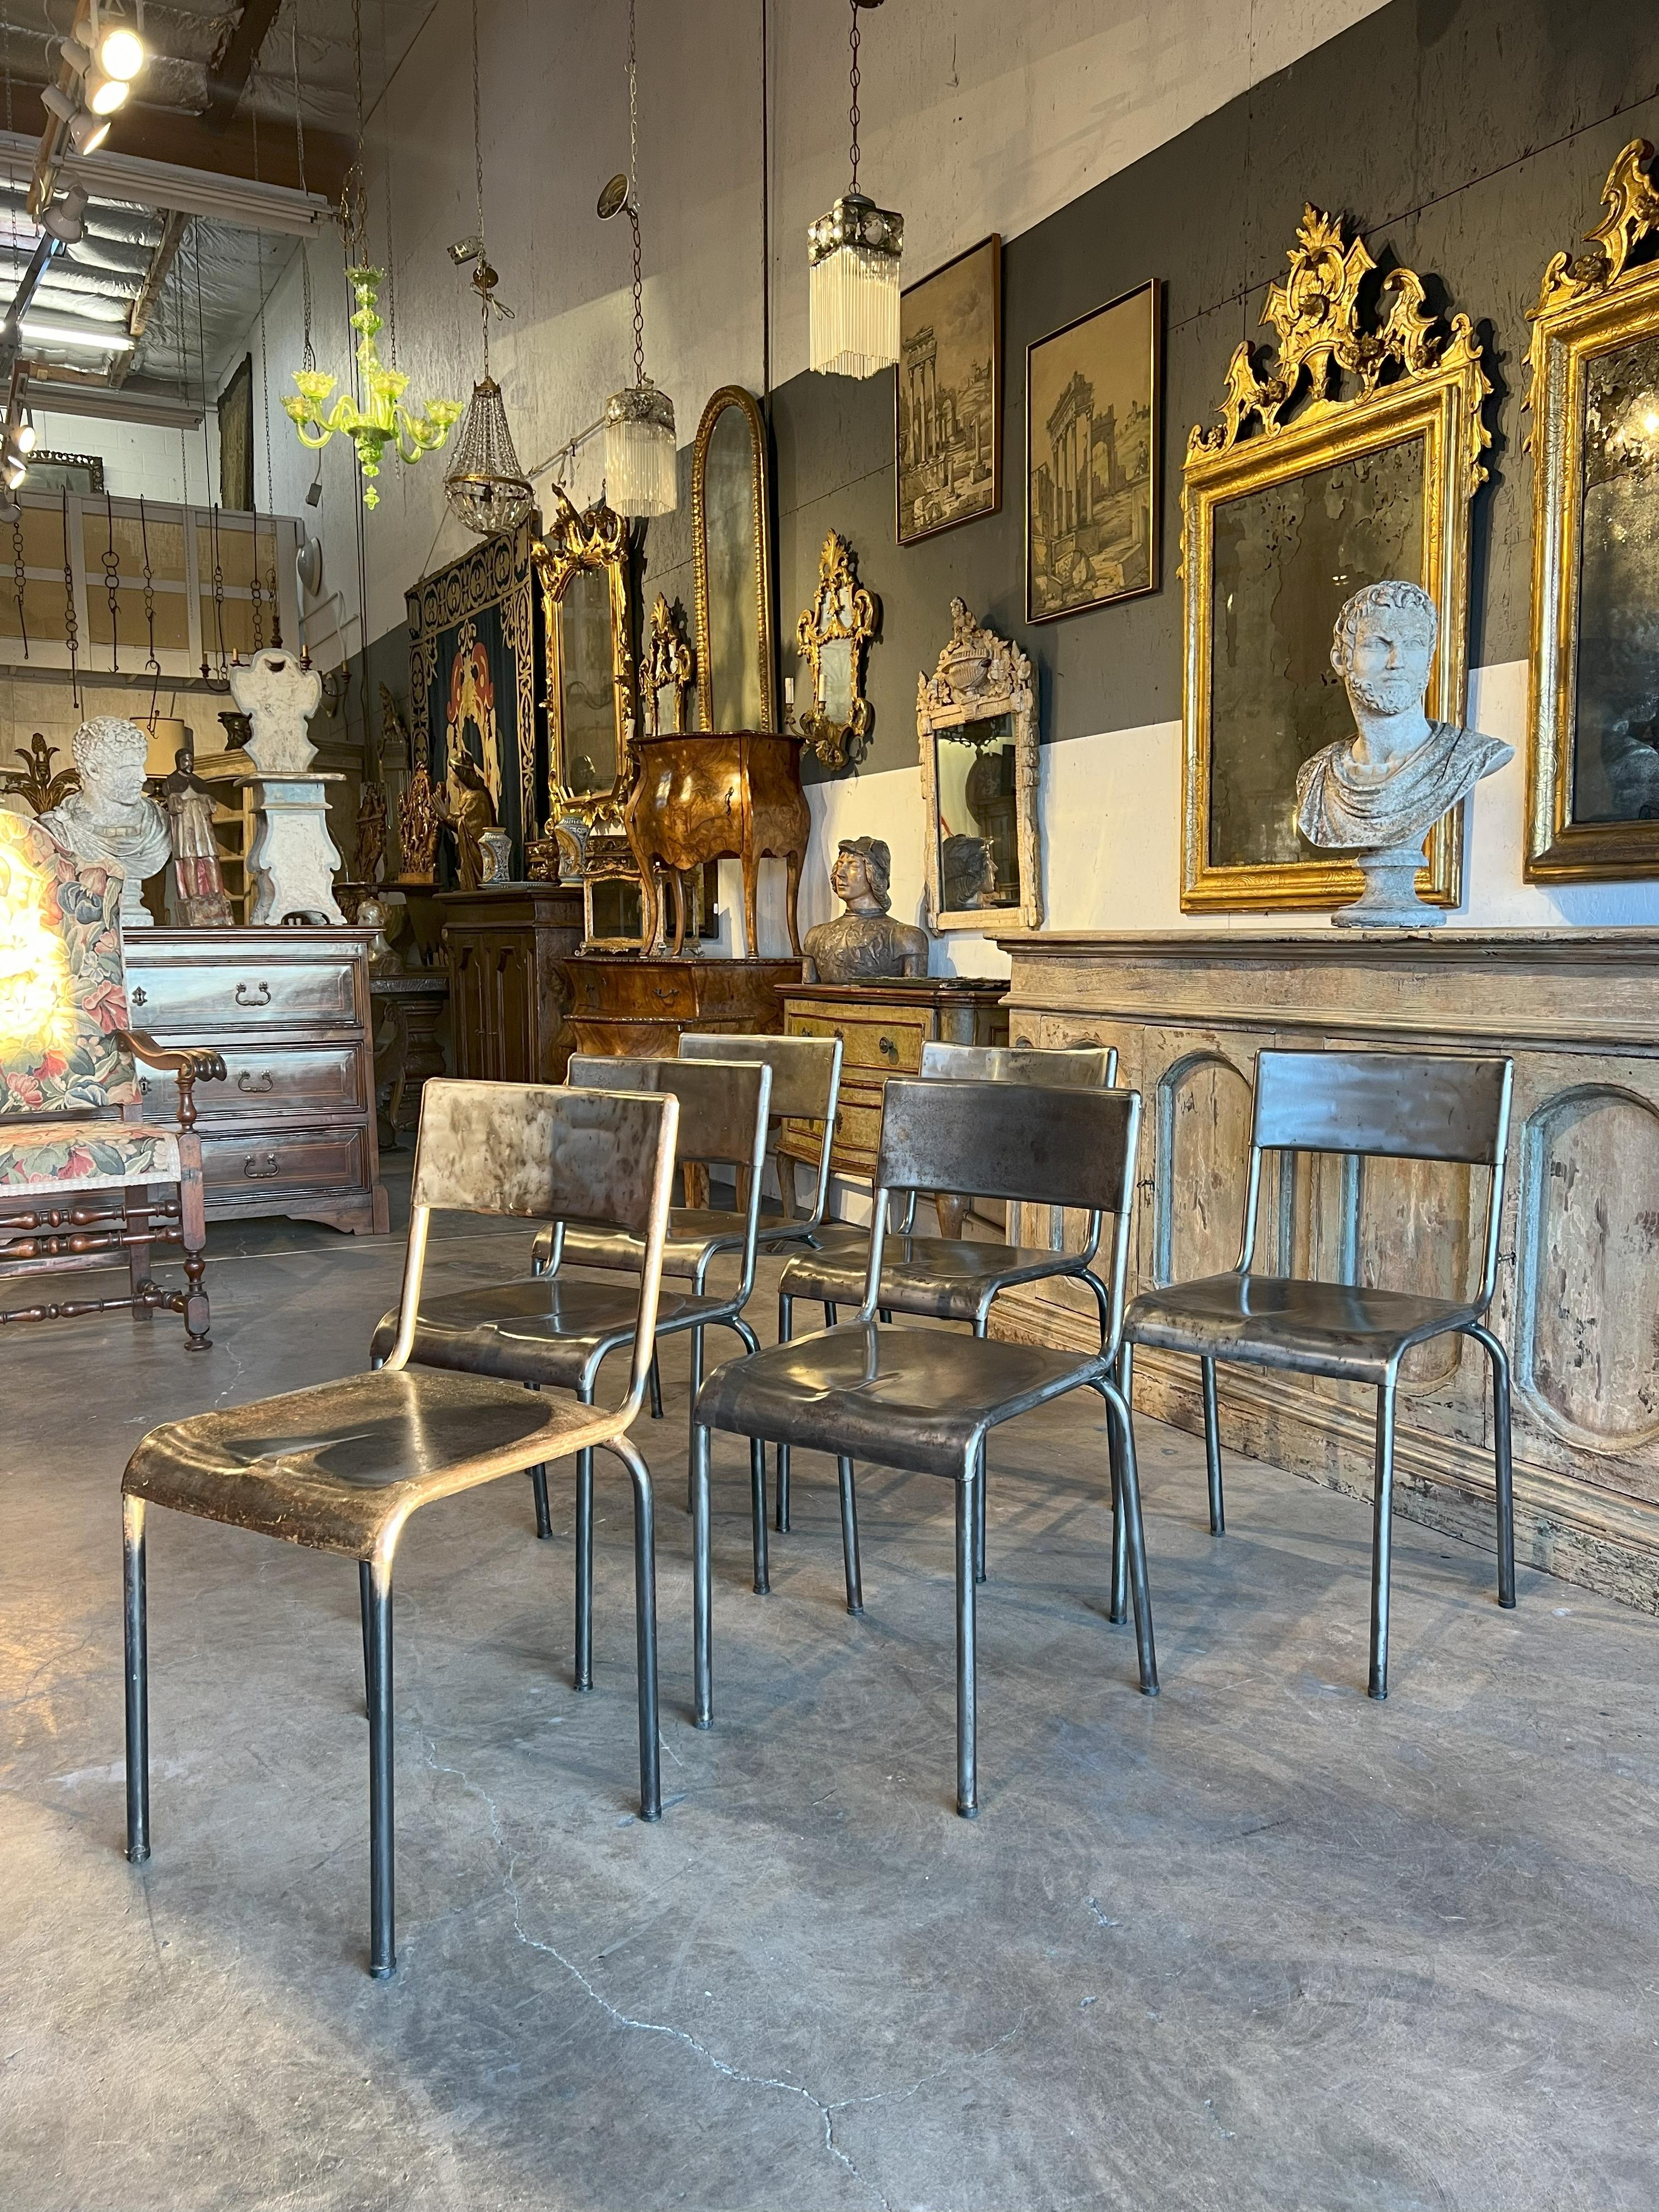 Ces six chaises ont été importées directement de Parma, au centre de l'Italie, et ont été fabriquées dans le style industriel classique, vers 1930. 
Probablement originaire d'une école ou d'un théâtre.
Ces chaises ont un aspect industriel moderne